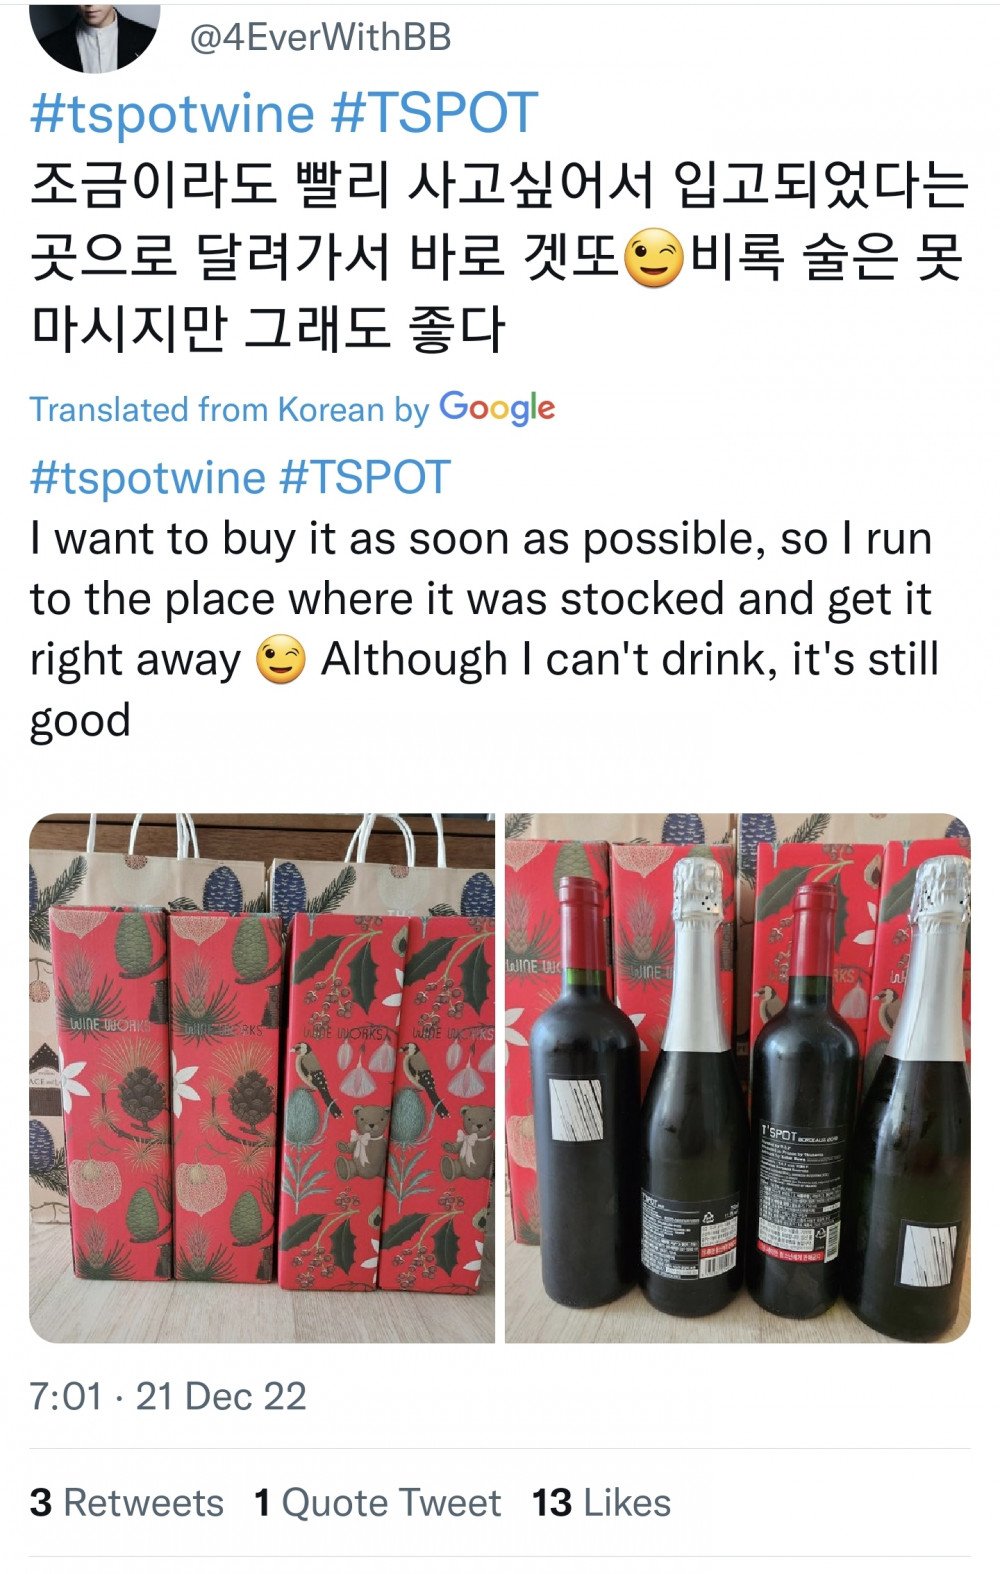 BIGBANG Member TOP's Wine Brand Receives Bumper Reception | allkpop